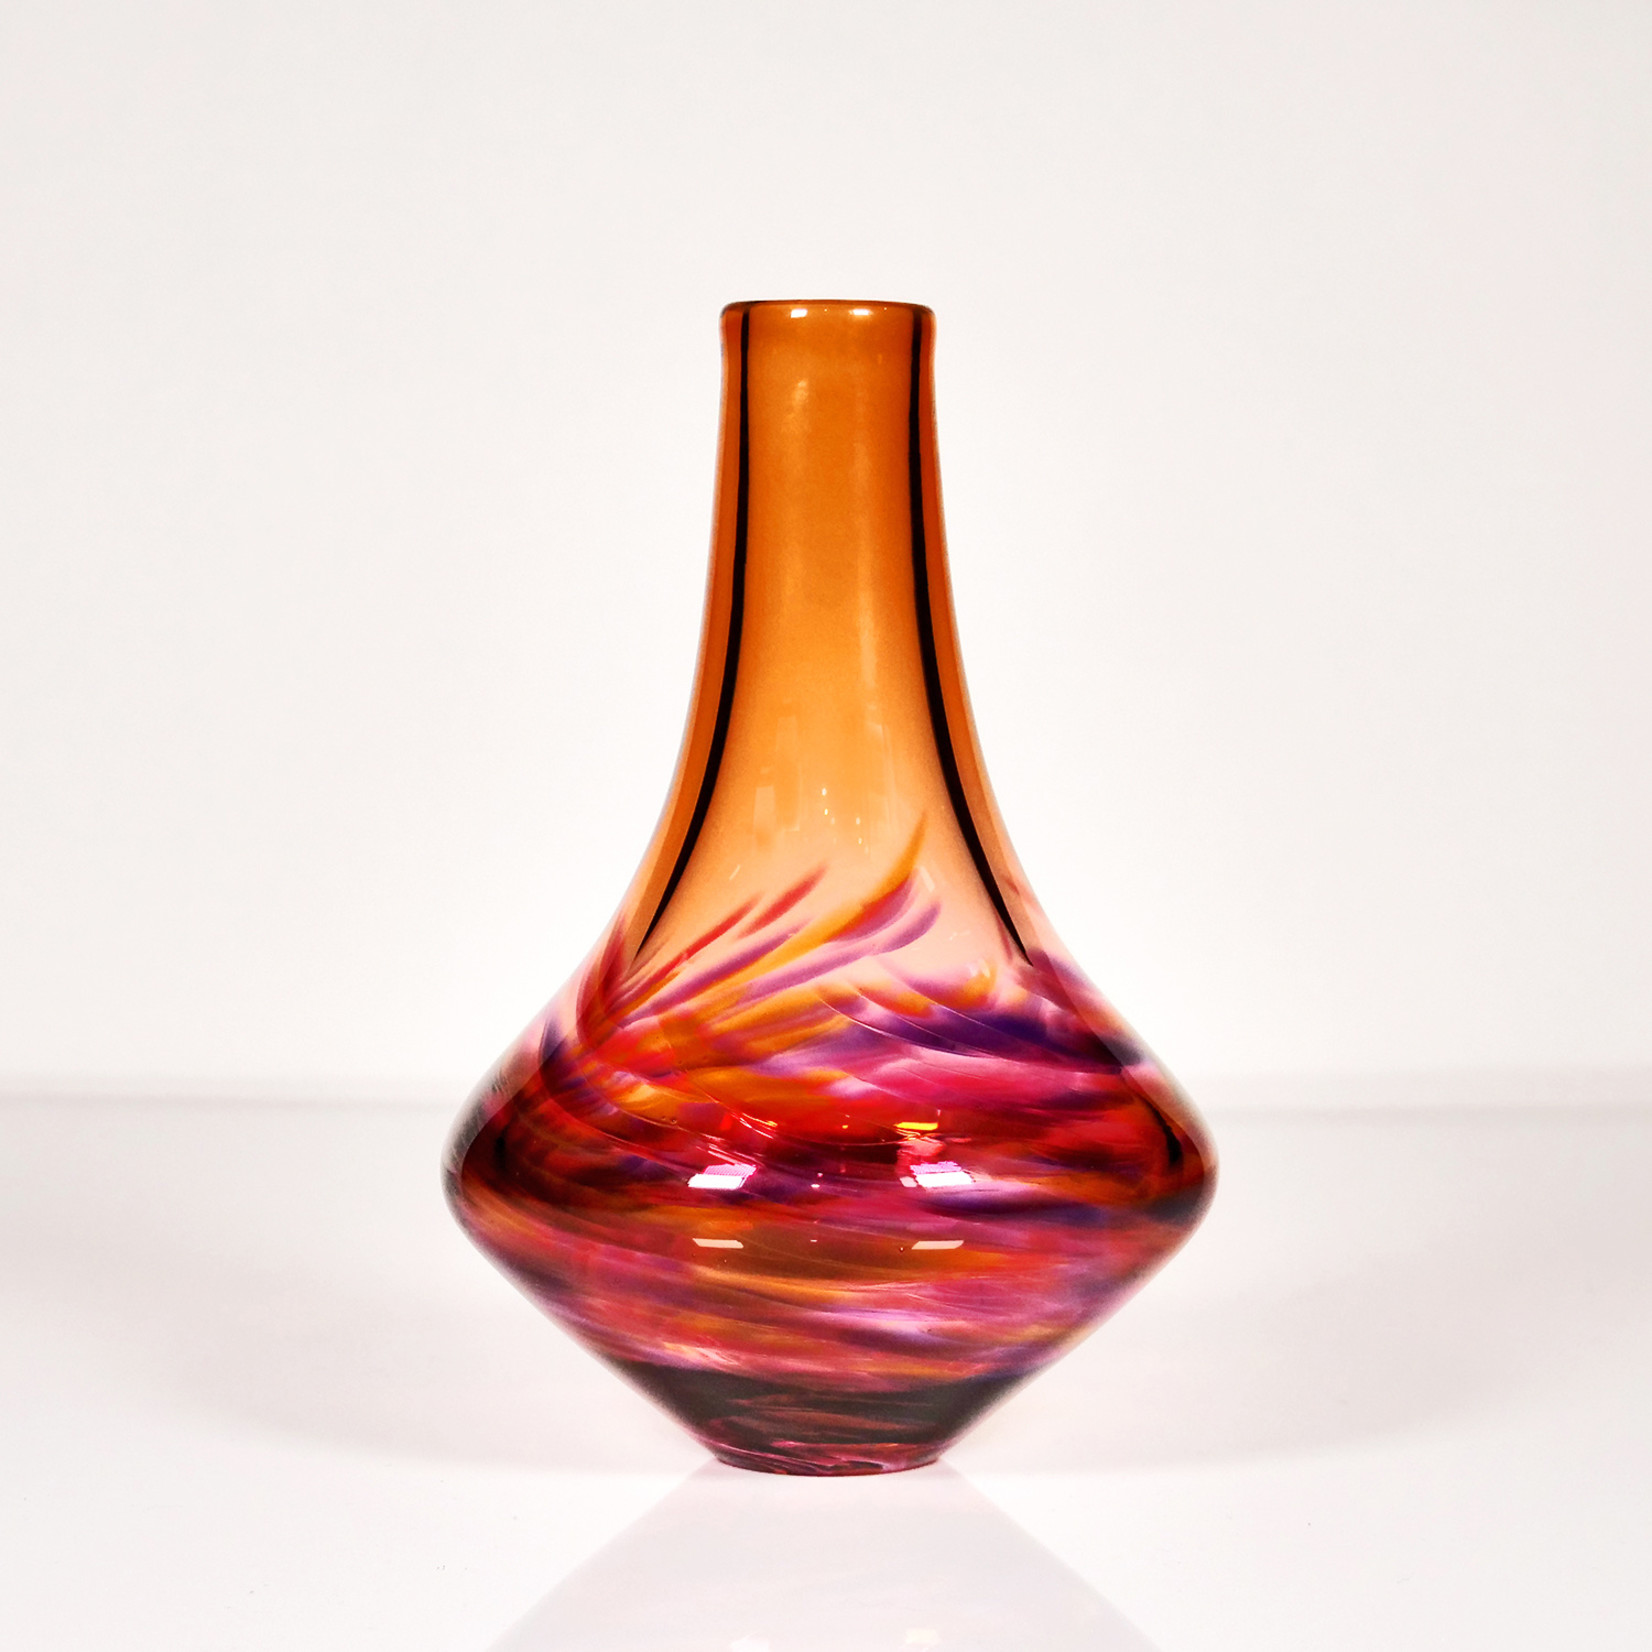 Little River Hot Glass: Vortex Vase Series